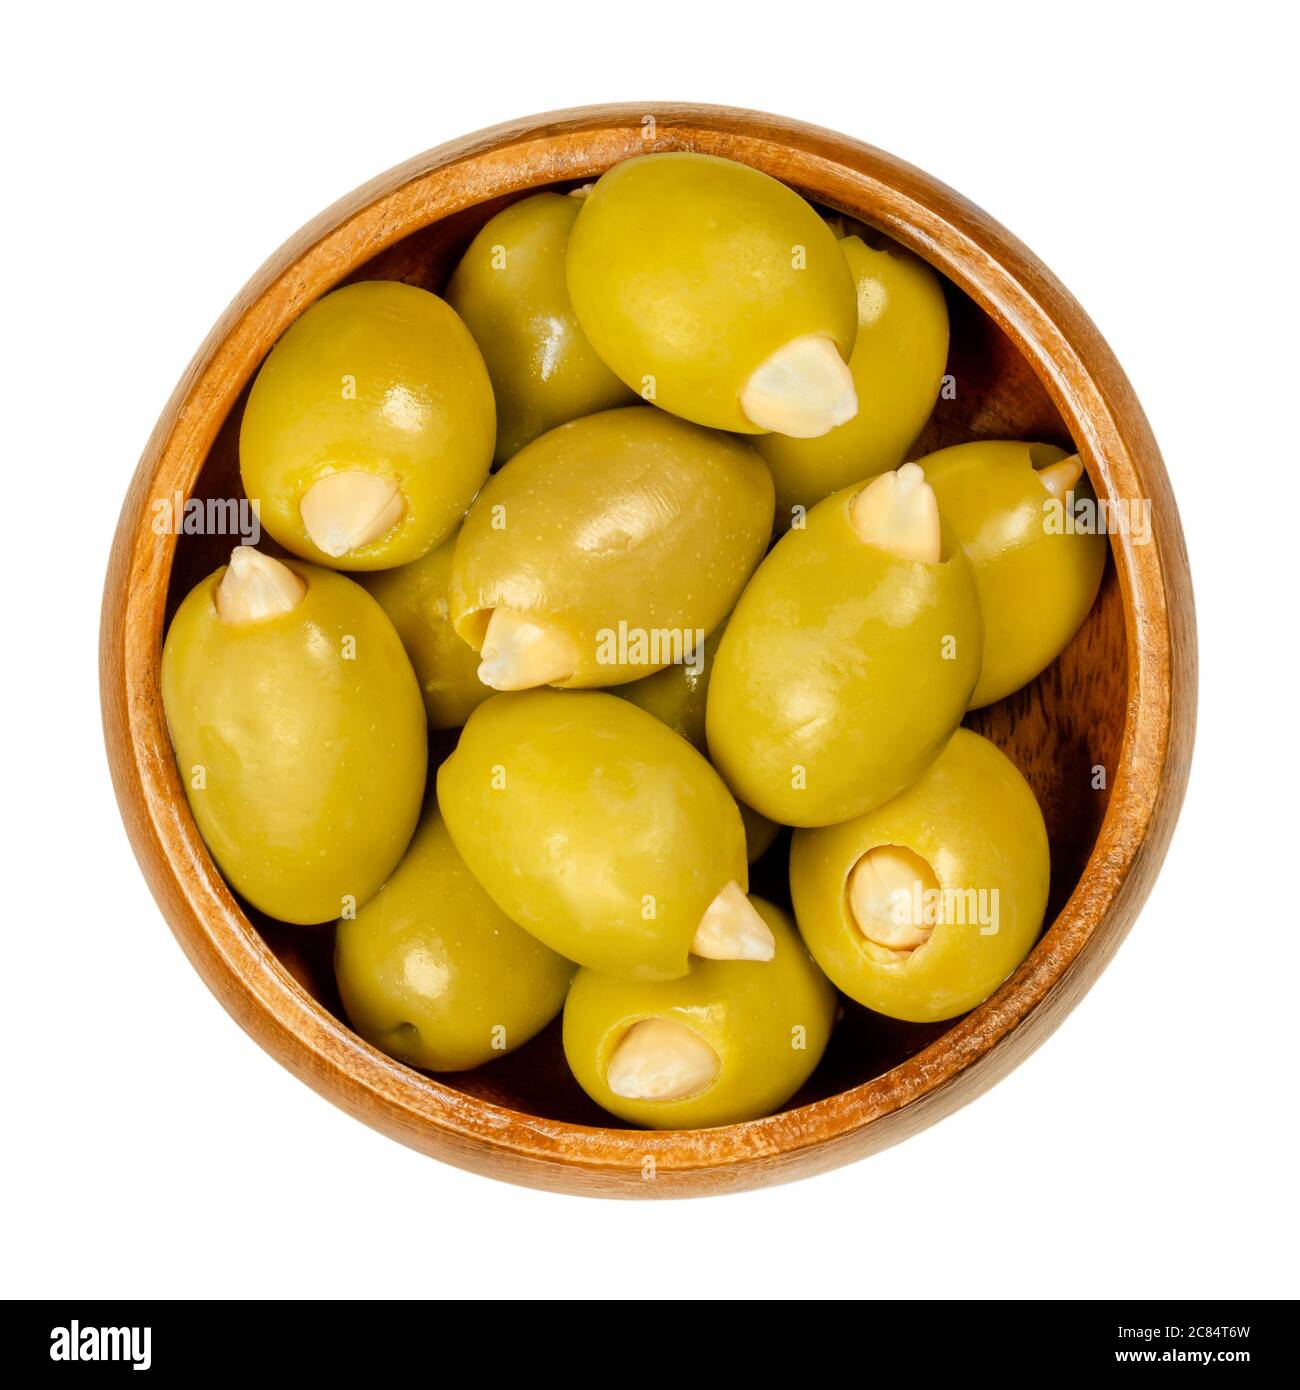 Olive verdi farcite di mandorle in ciotola di legno. Olive europee grandi, frutti di Olea europea, farcite a mano con mandorle croccanti sottaceto. Foto Stock